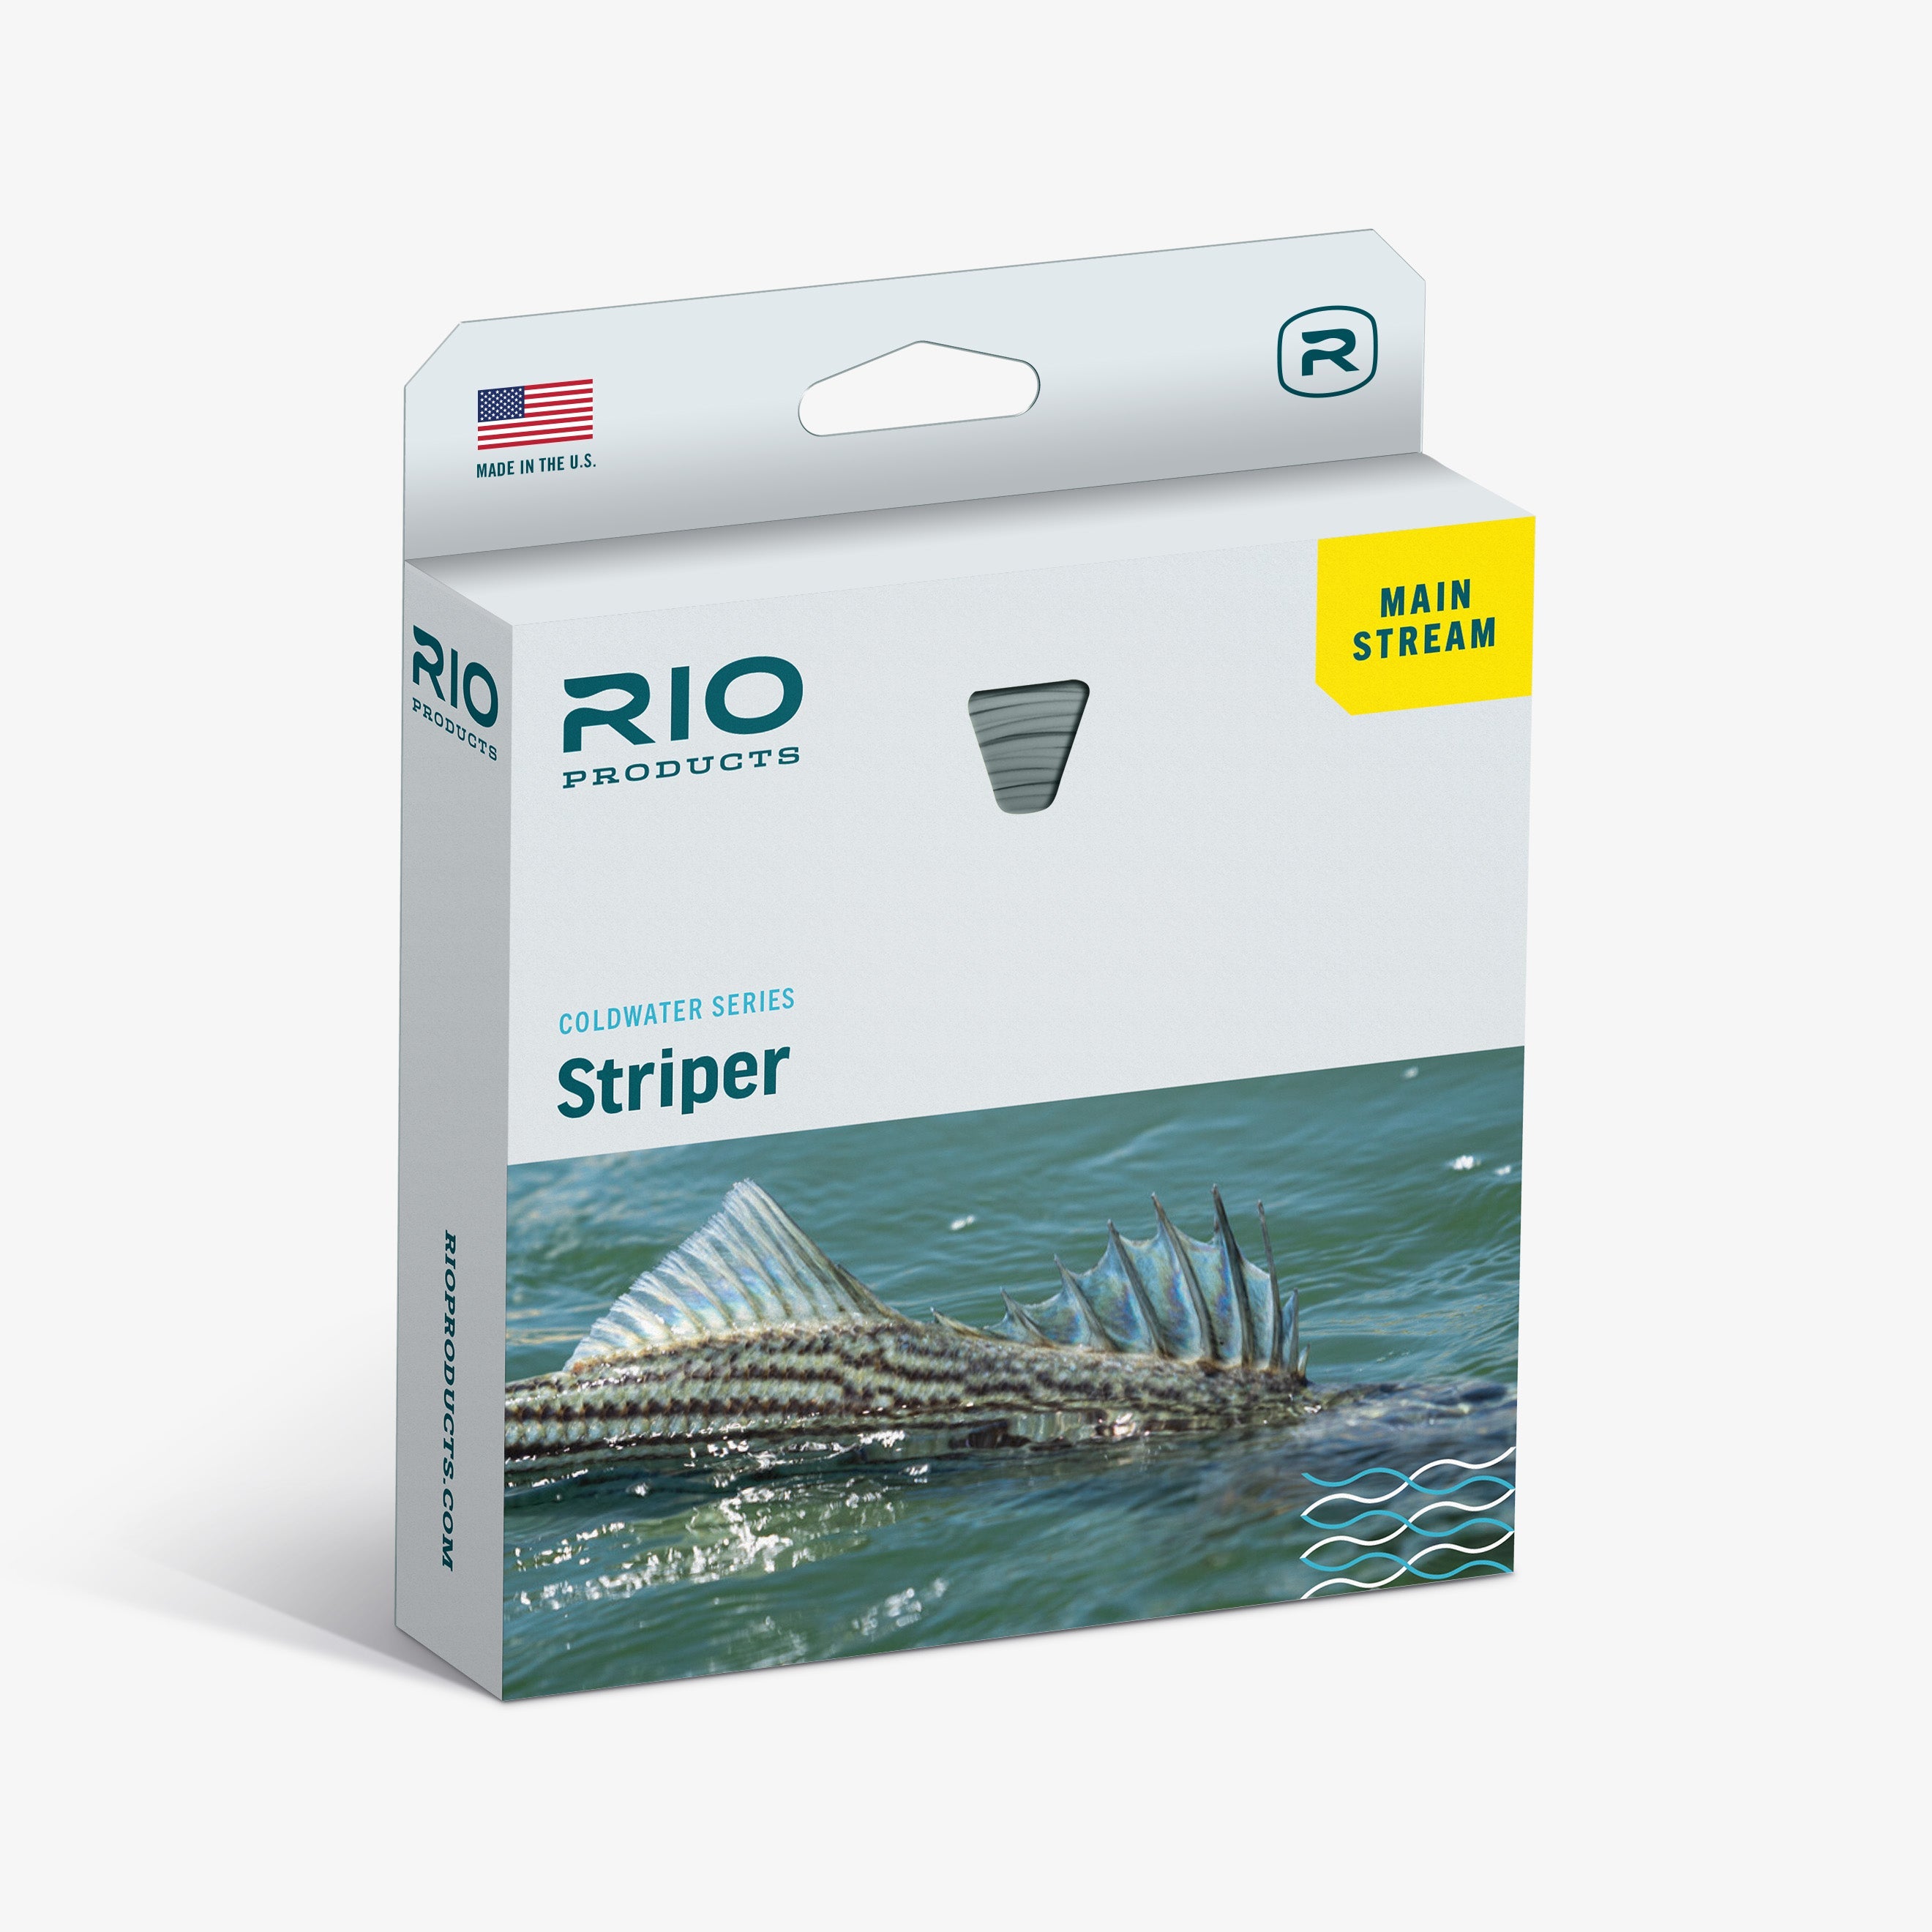 最安値級価格 RIO Products & Line Products Fly フライライン メインストリーム Aqualux RIO 中級 Line  Wf7I Review Rio Aqualux Wf7I, クリア 釣り